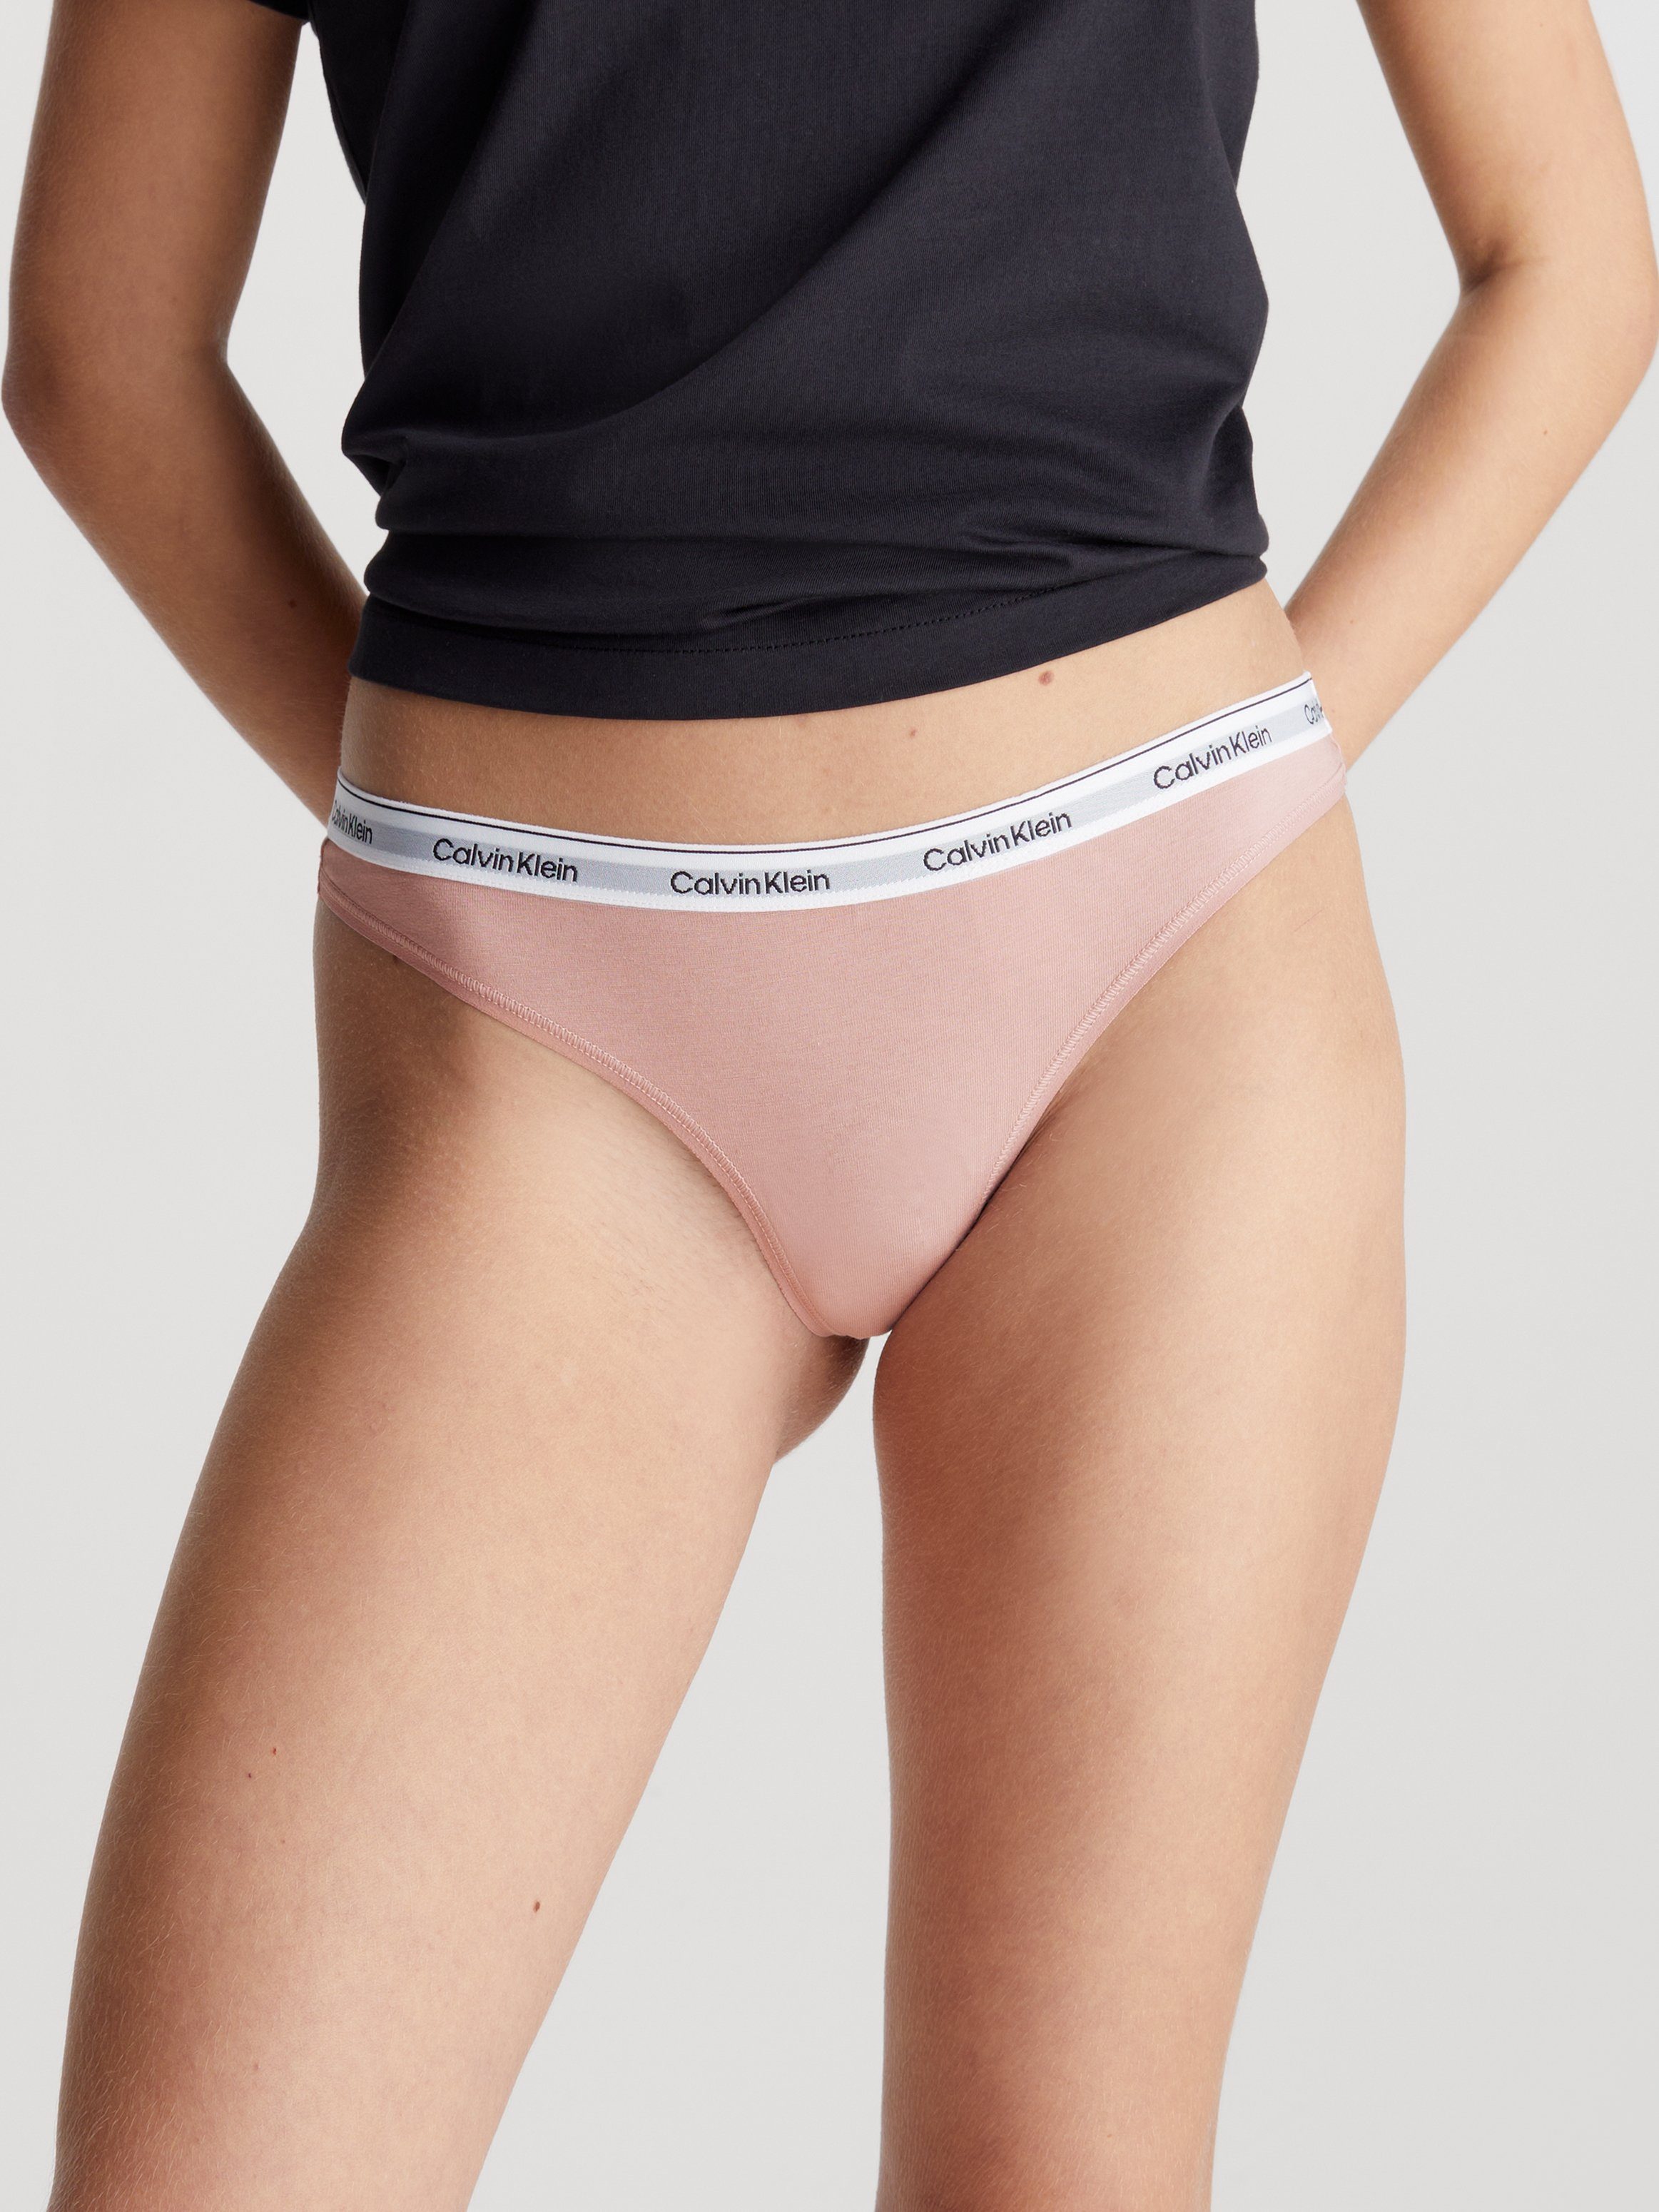 Calvin Klein Underwear String in effen design